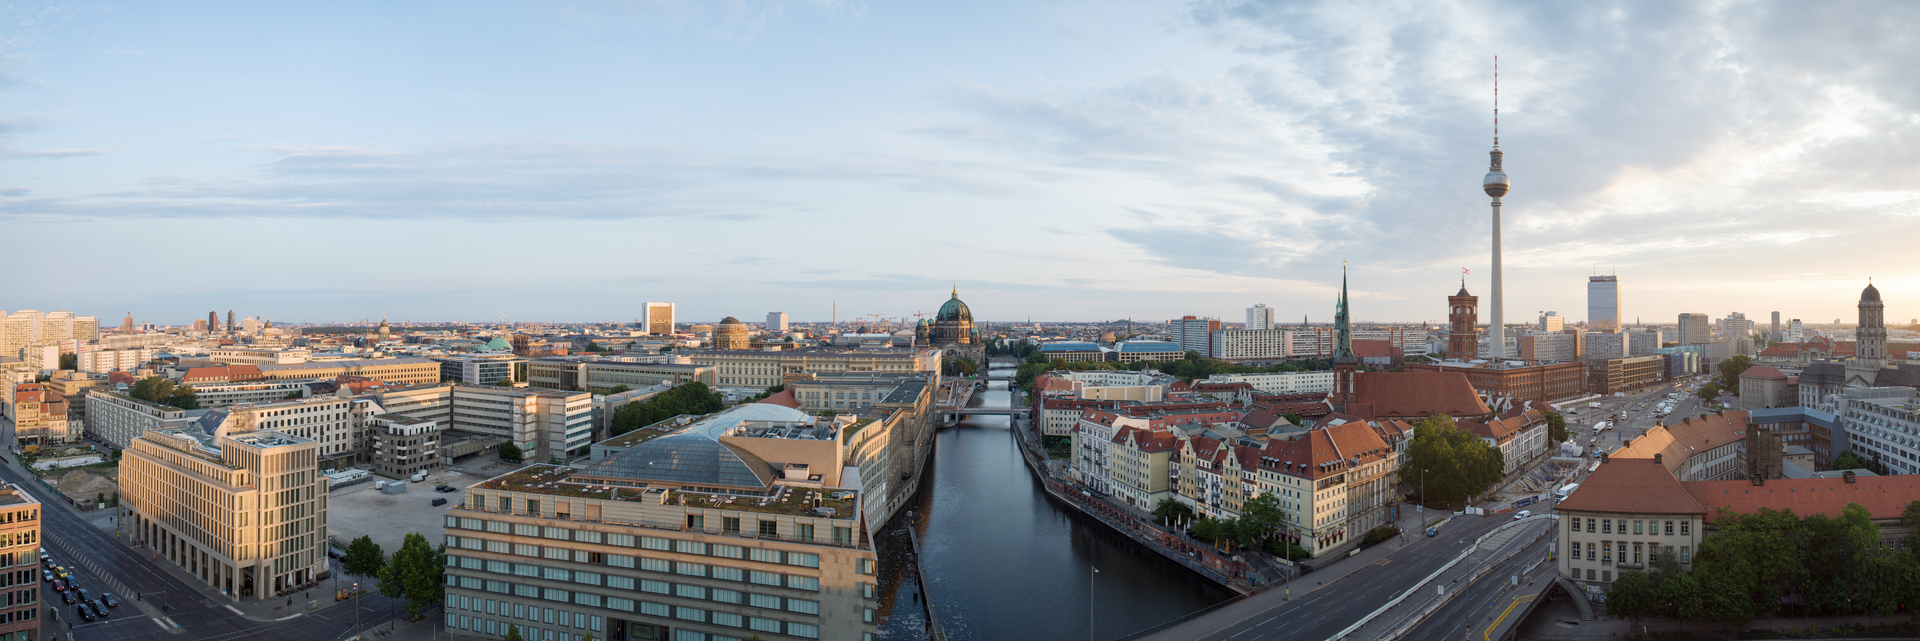 Stadtwärme für ein klimaneutrales Berlin